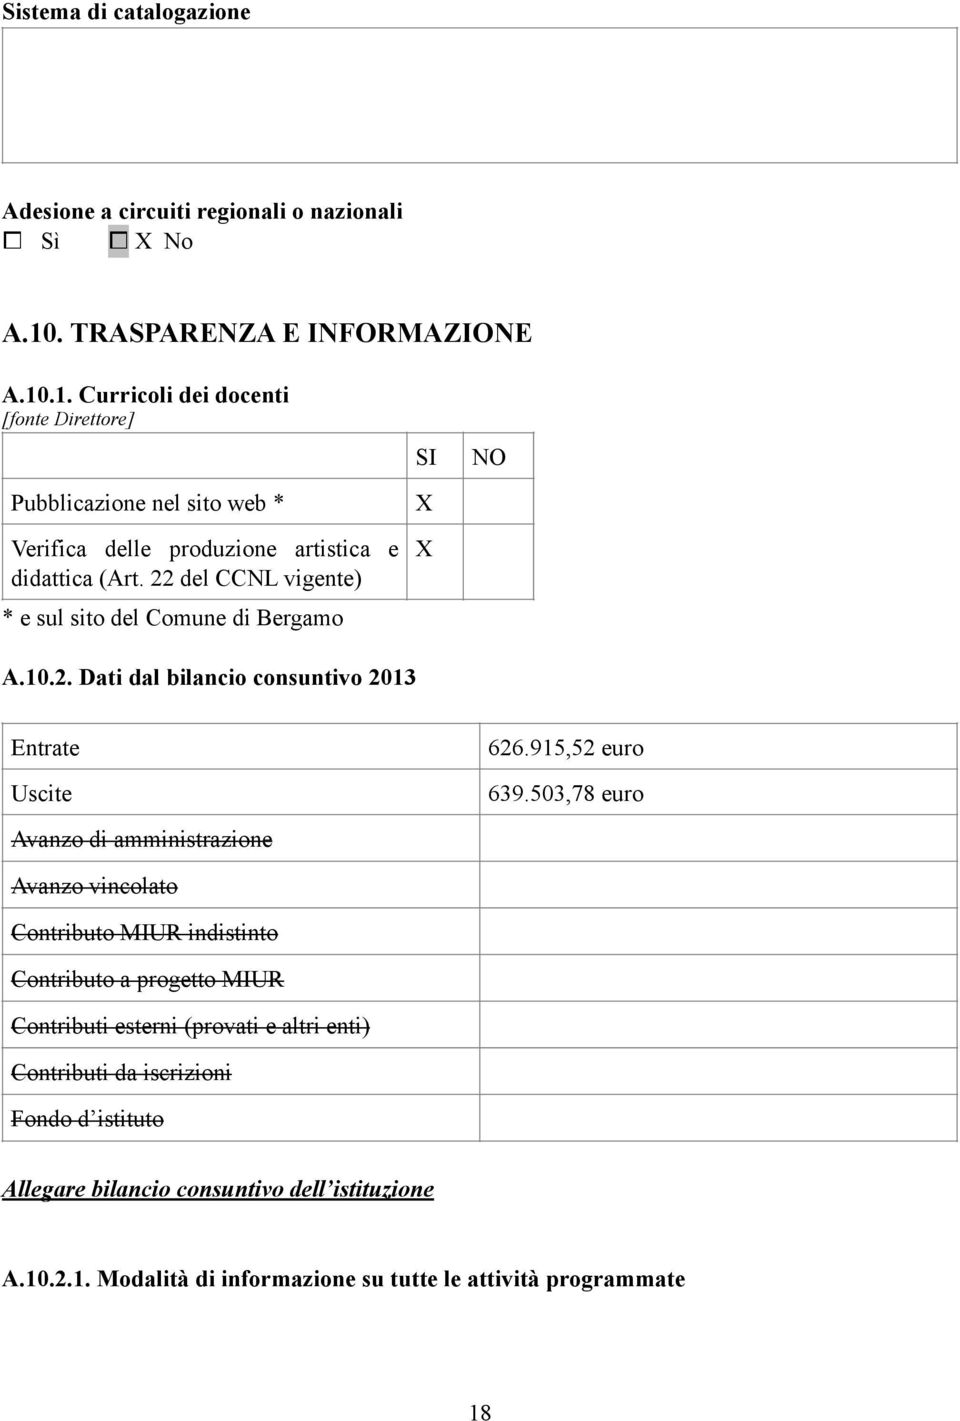 22 del CCNL vigente) * e sul sito del Comune di Bergamo SI NO A.10.2. Dati dal bilancio consuntivo 2013 Entrate Uscite 626.915,52 euro 639.